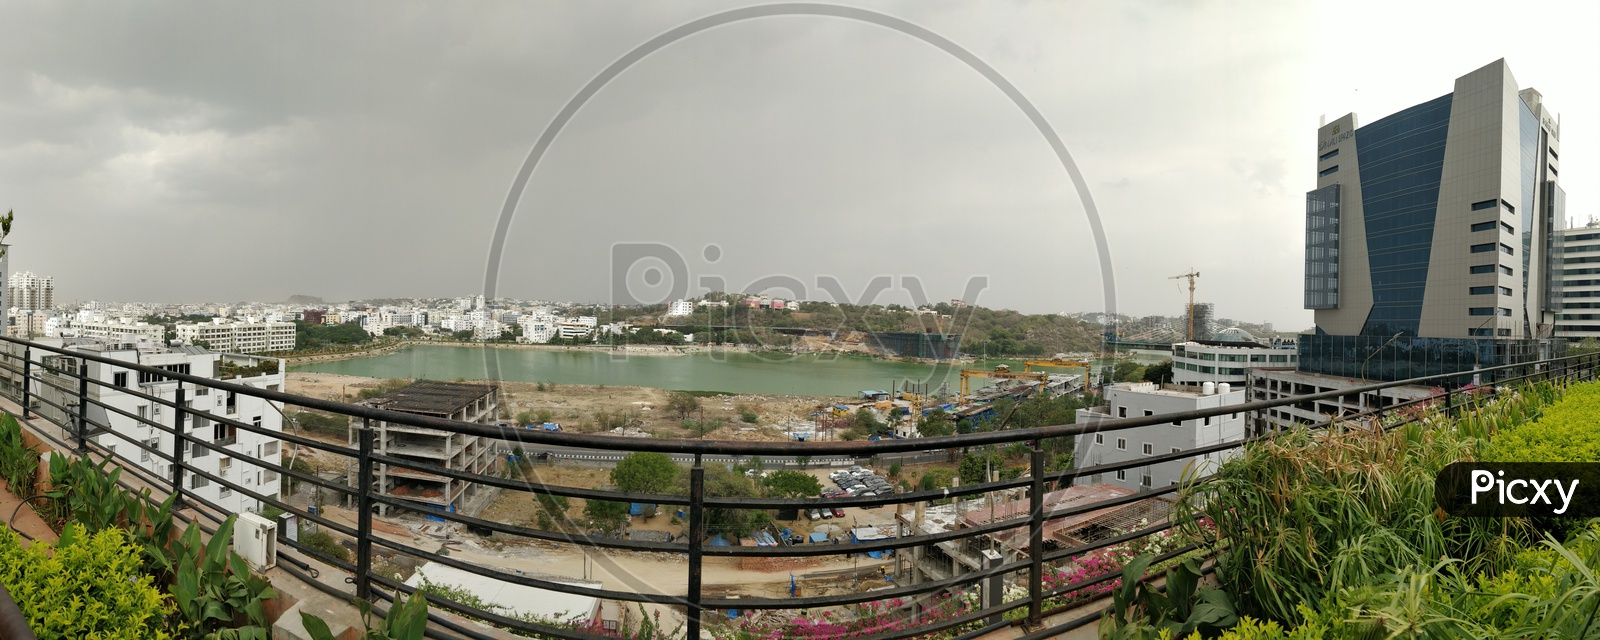 Durgam Cheruvu view from Inorbit mall